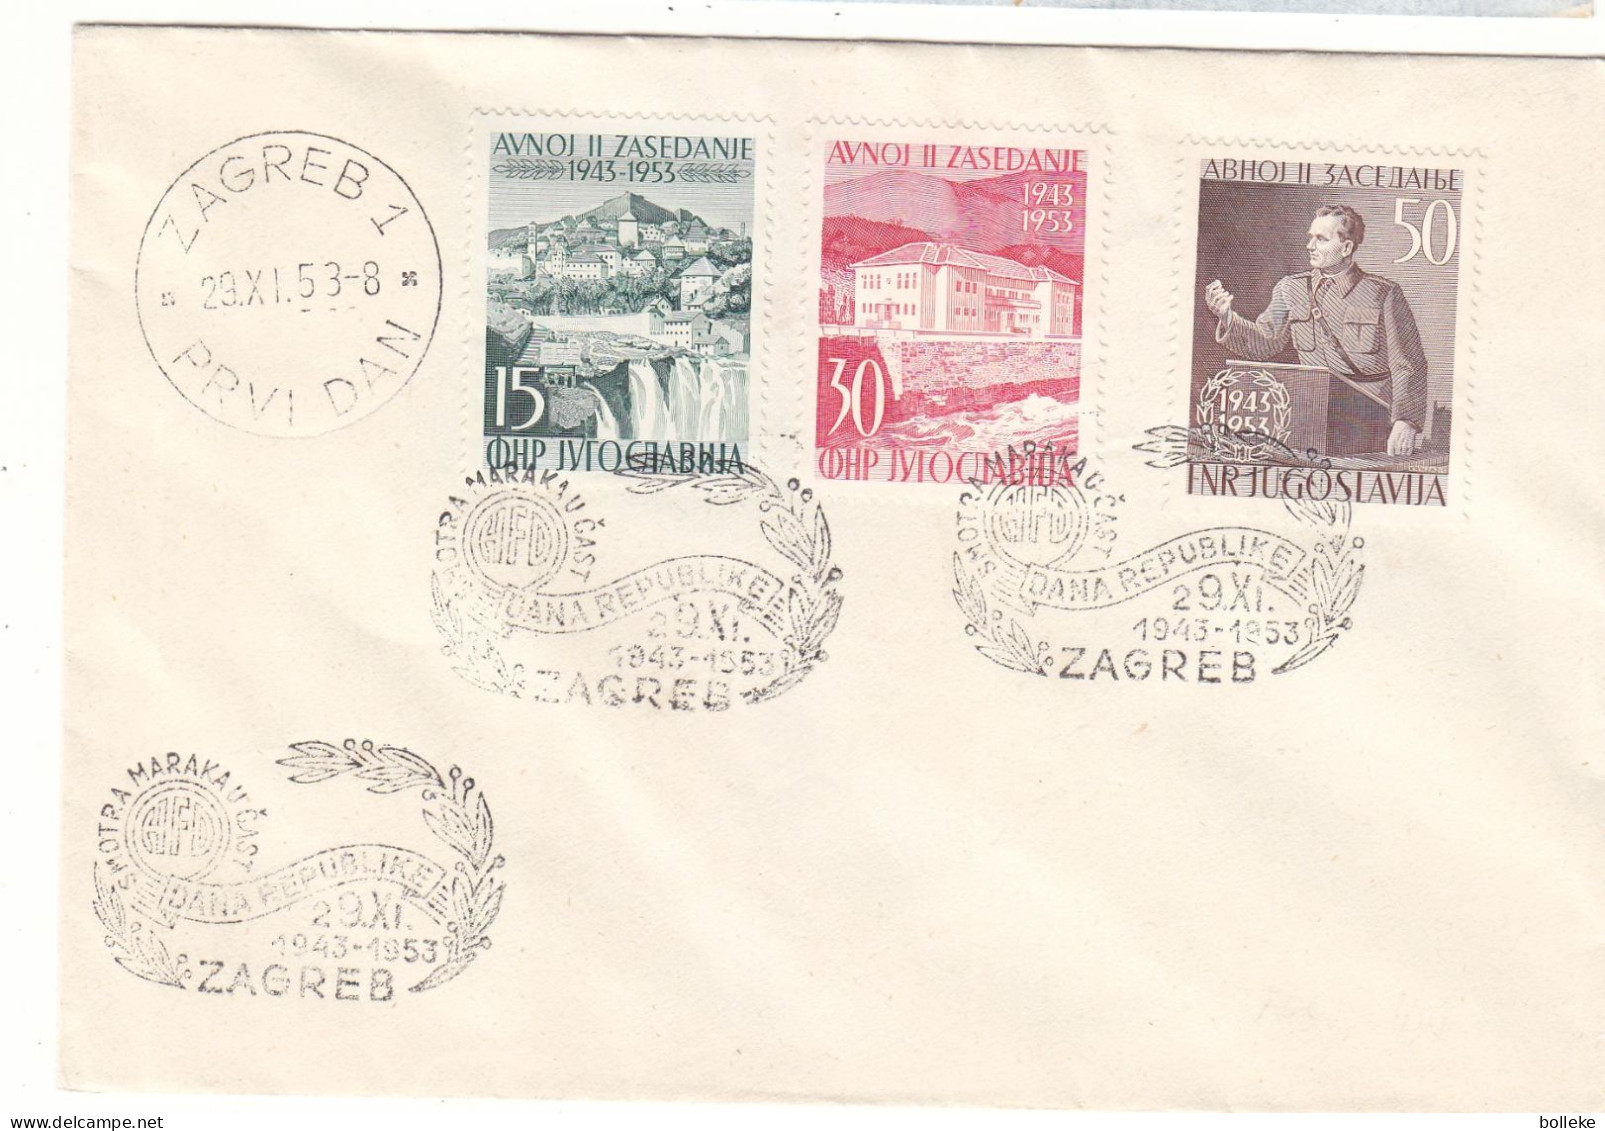 Yougoslavie - Lettre De 1953 - Oblit Zagreb - Tito - Chutes D'eaux - Valeur 60,00 Euros - Lettres & Documents